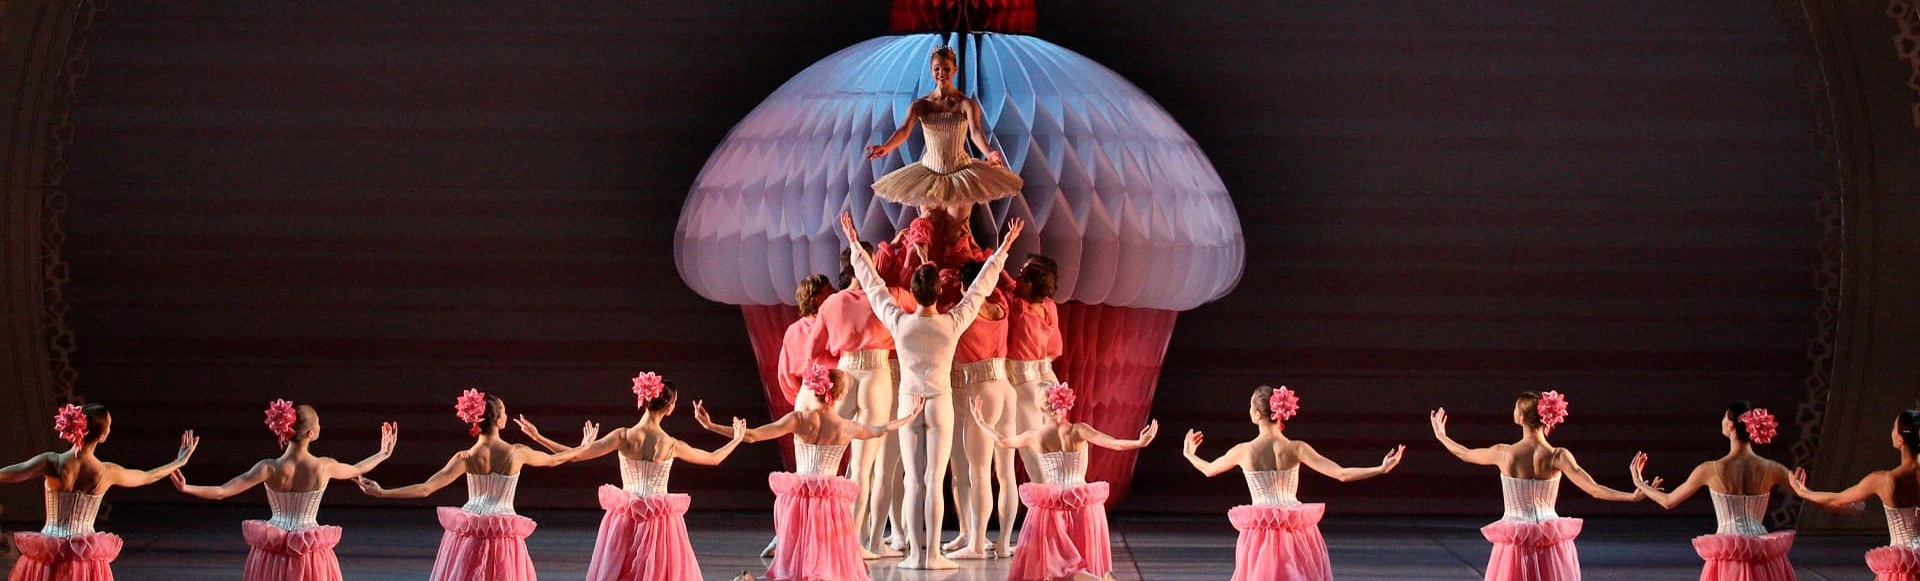 Михайловский театр приглашает вас на захватывающее путешествие в мир волшебства с балетом «Щелкунчик»!